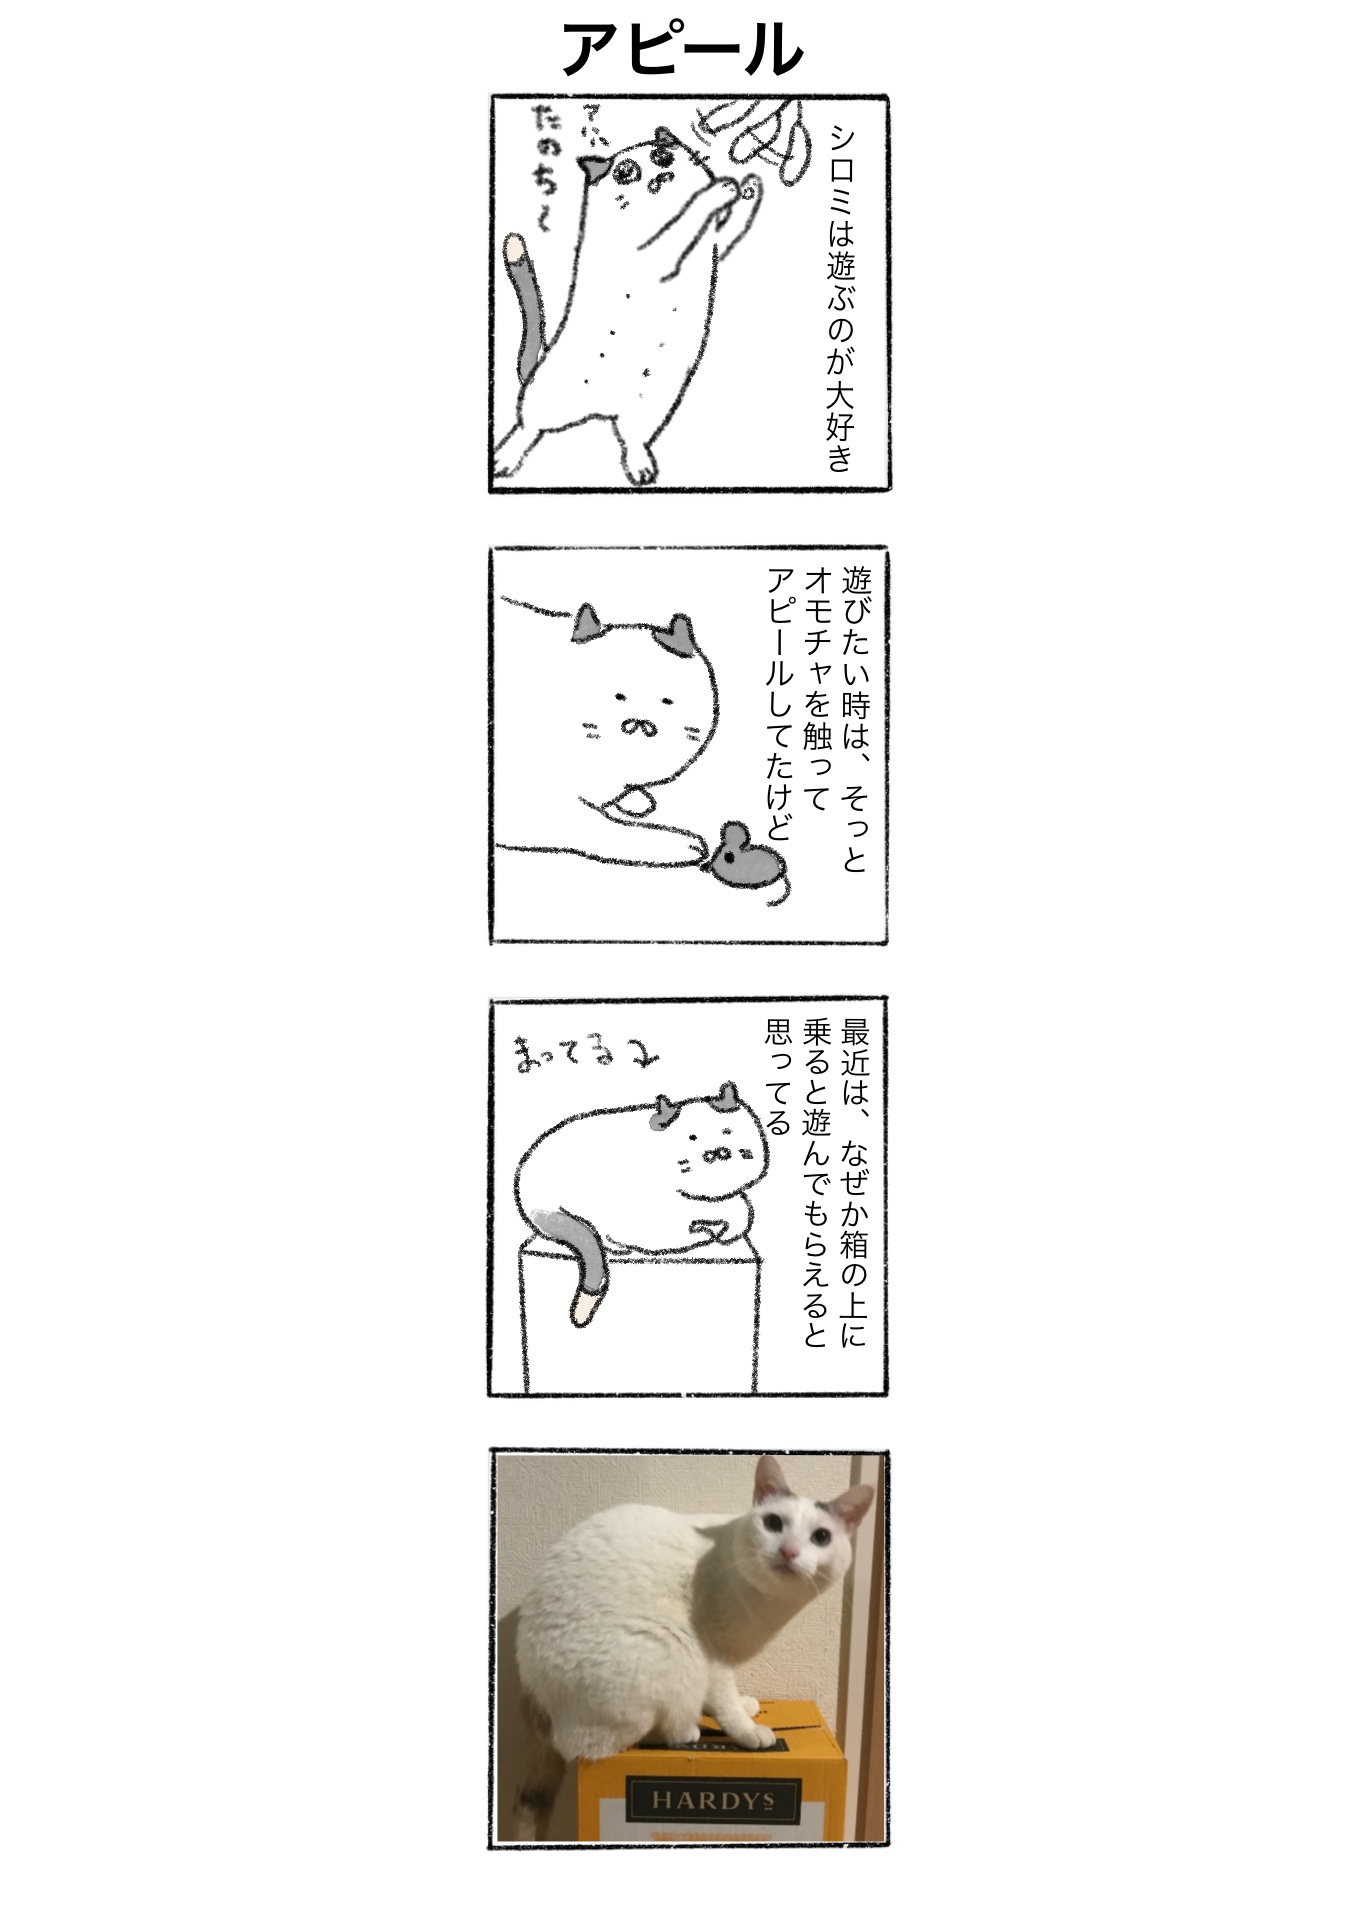 【ゆる猫4コマ】#008 アピール